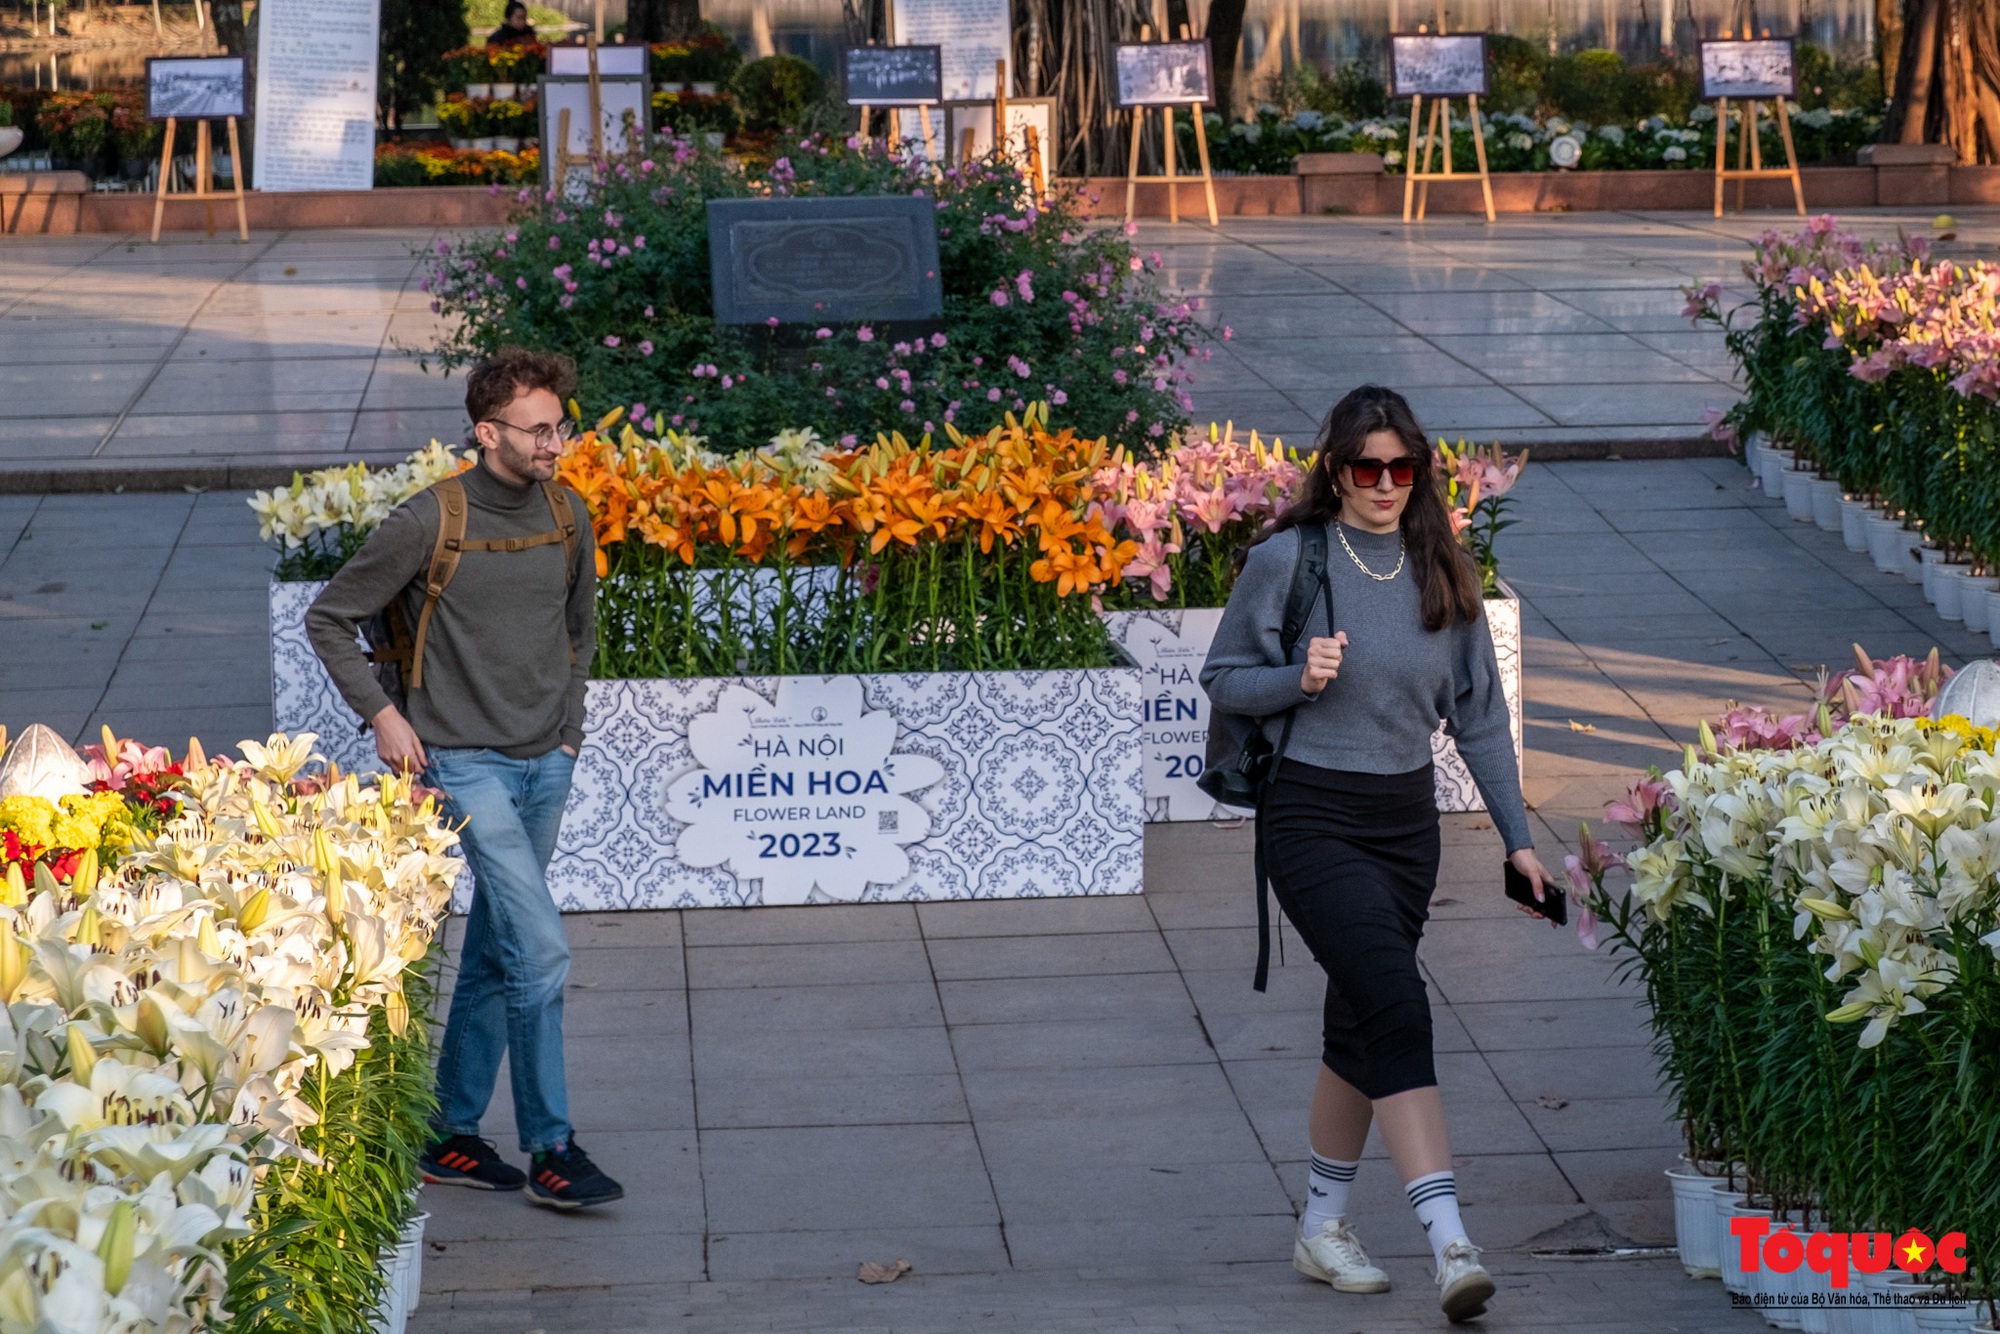 Ngắm nhìn 6 vạn cành hoa ly Hà Lan ở “Hà Nội miền hoa 2023” - Ảnh 13.